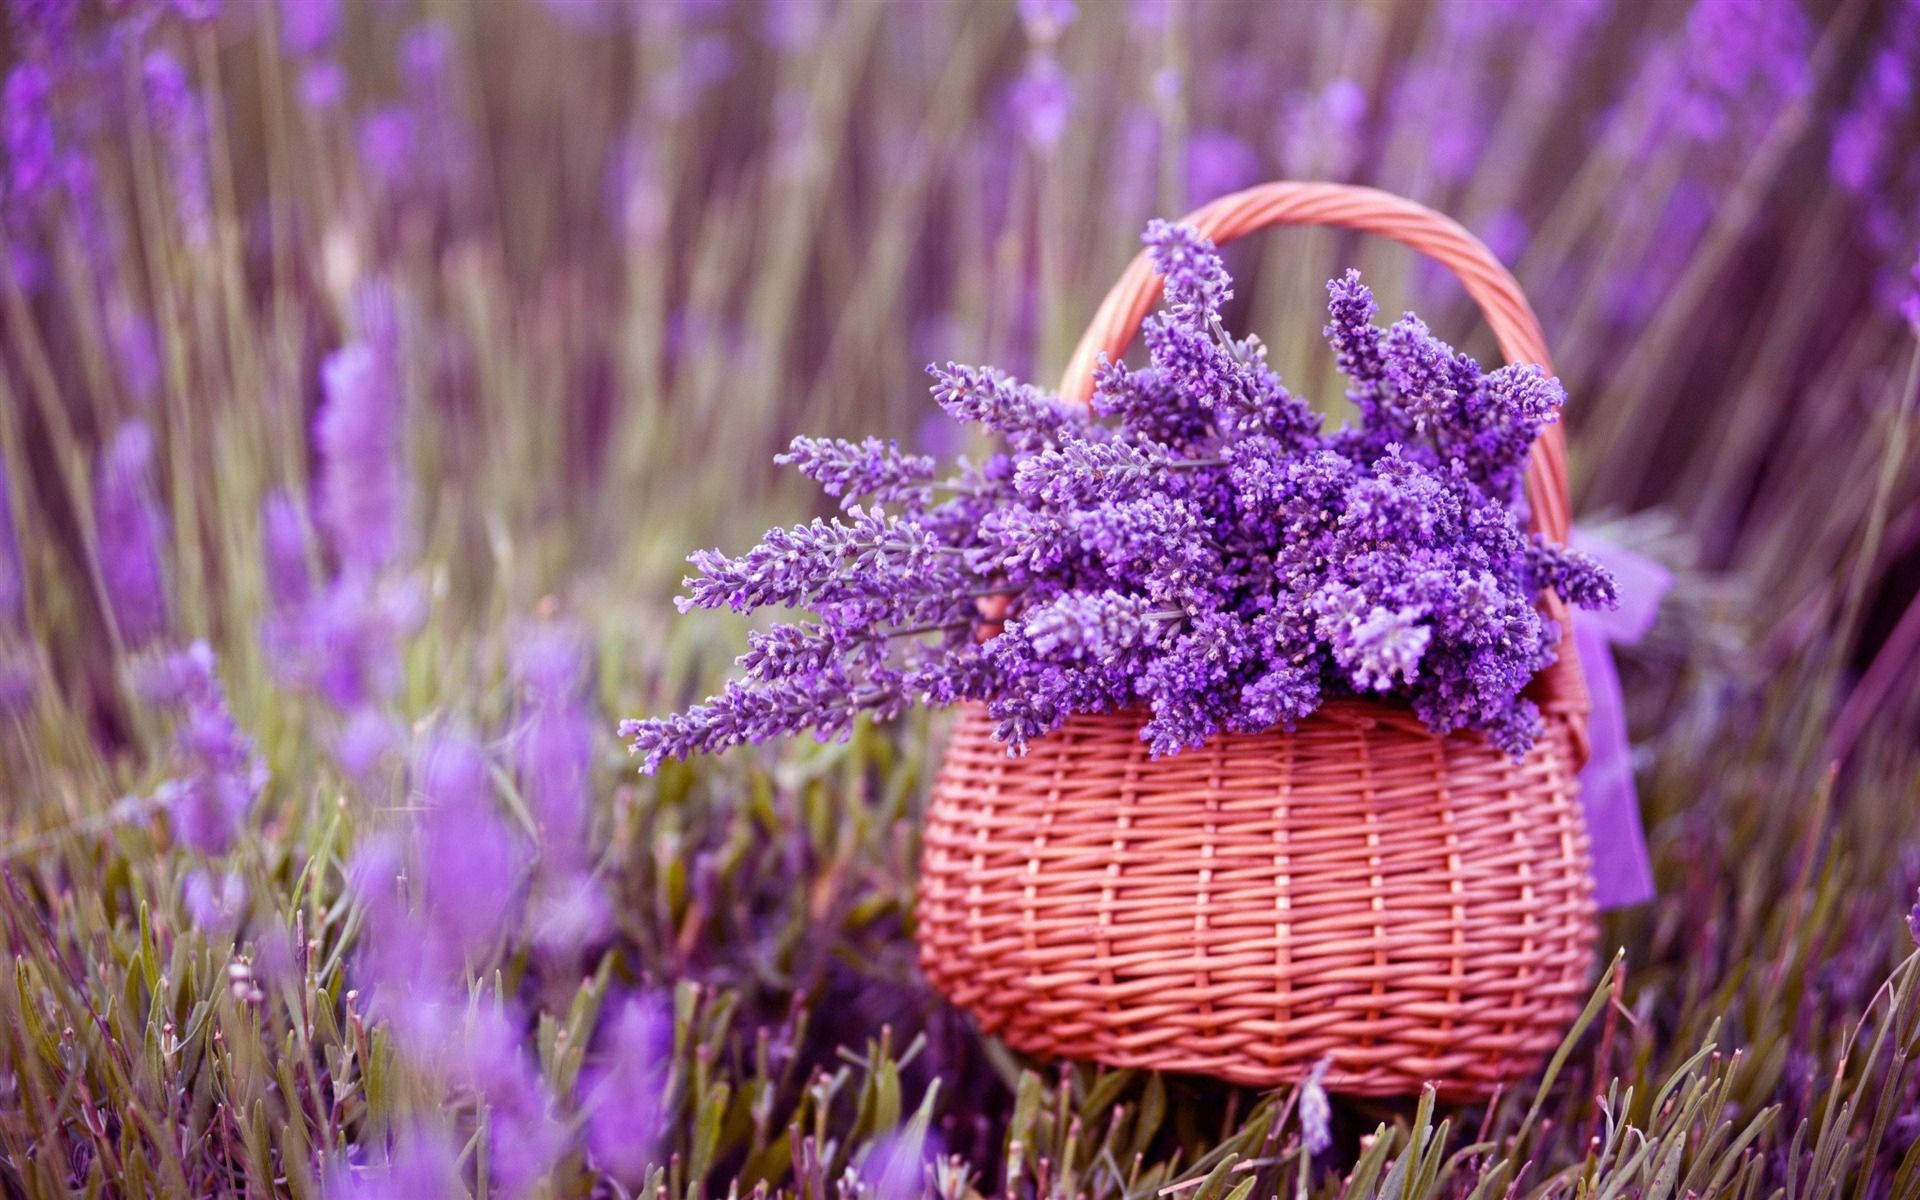 Lavender Flowers In Basket On Field Wallpaper